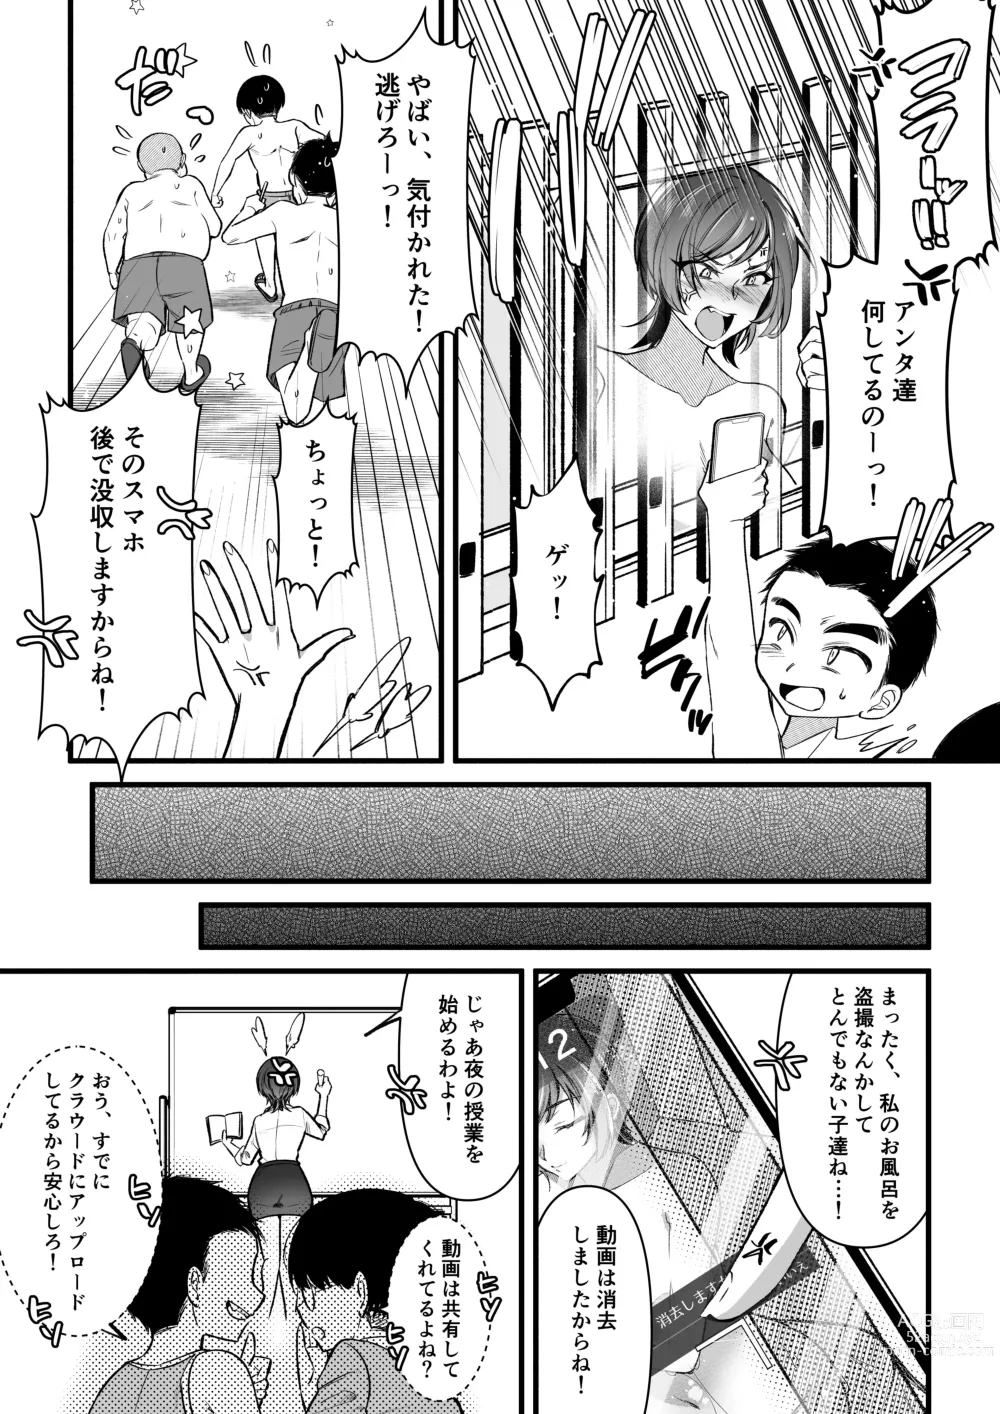 Page 11 of doujinshi Natsu Gasshuku Innocence